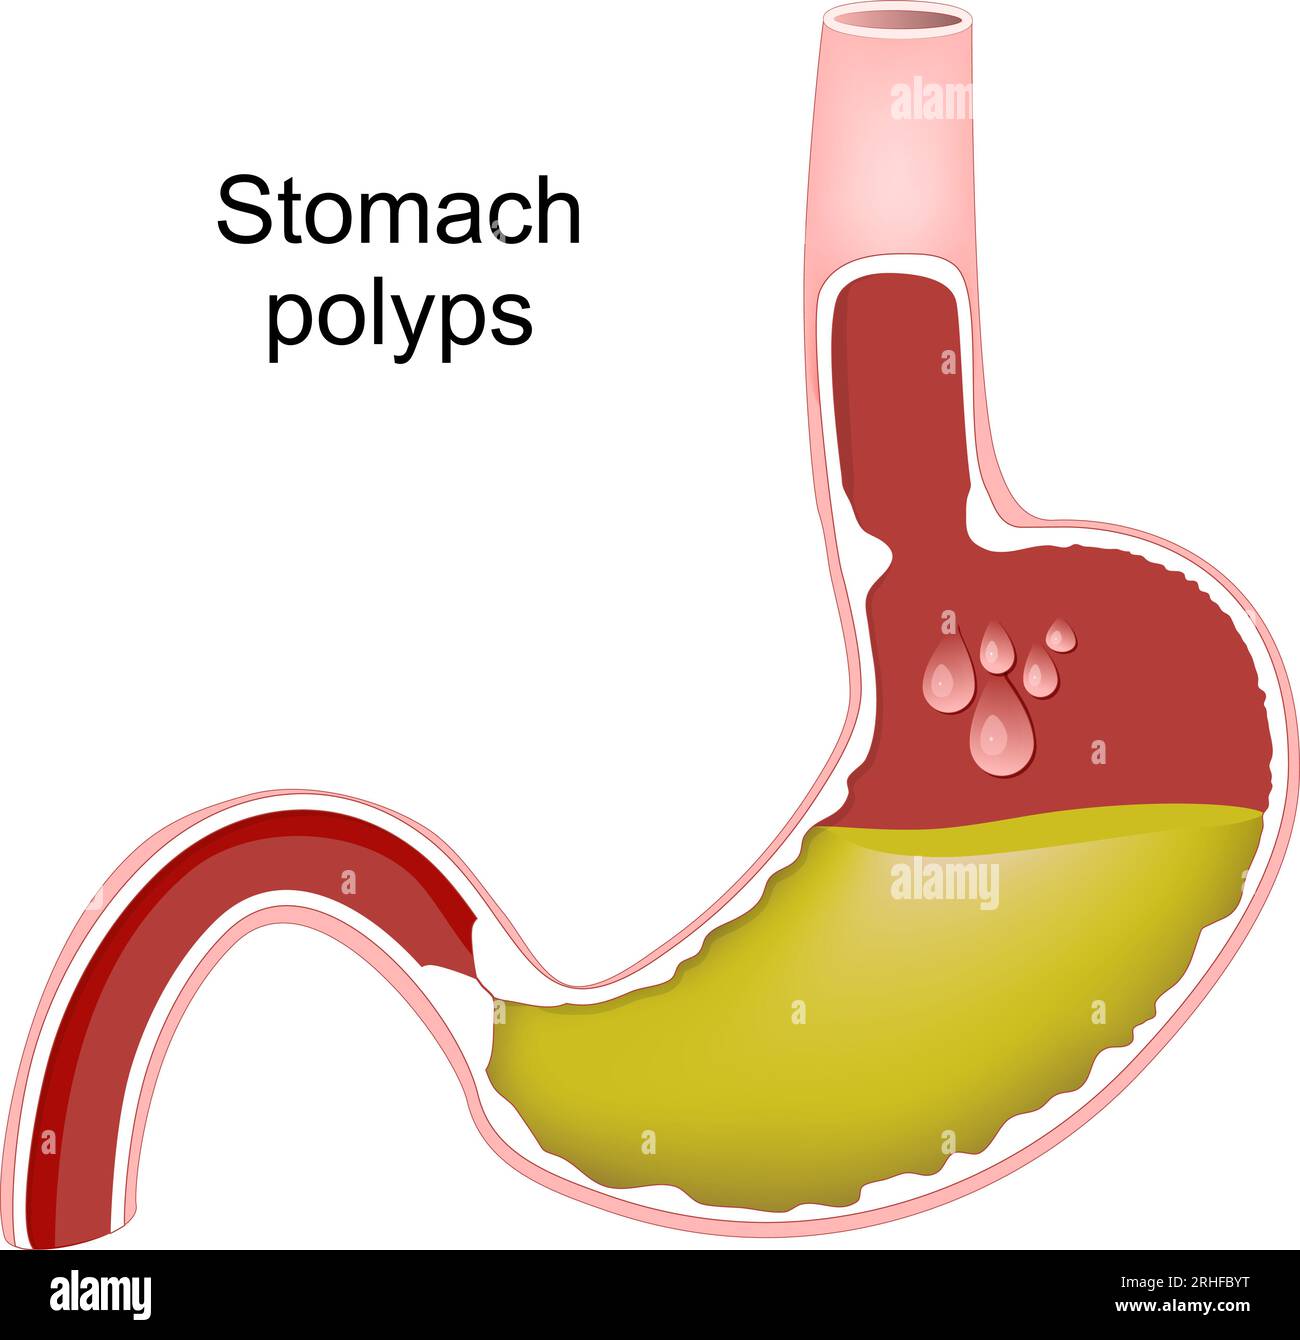 Polypes gastriques. Coupe transversale de l'estomac humain avec polypes gastriques. Hyperplasie de la muqueuse gastrique. Infection bactérienne à Helicobacter pylori. Illustration de Vecteur